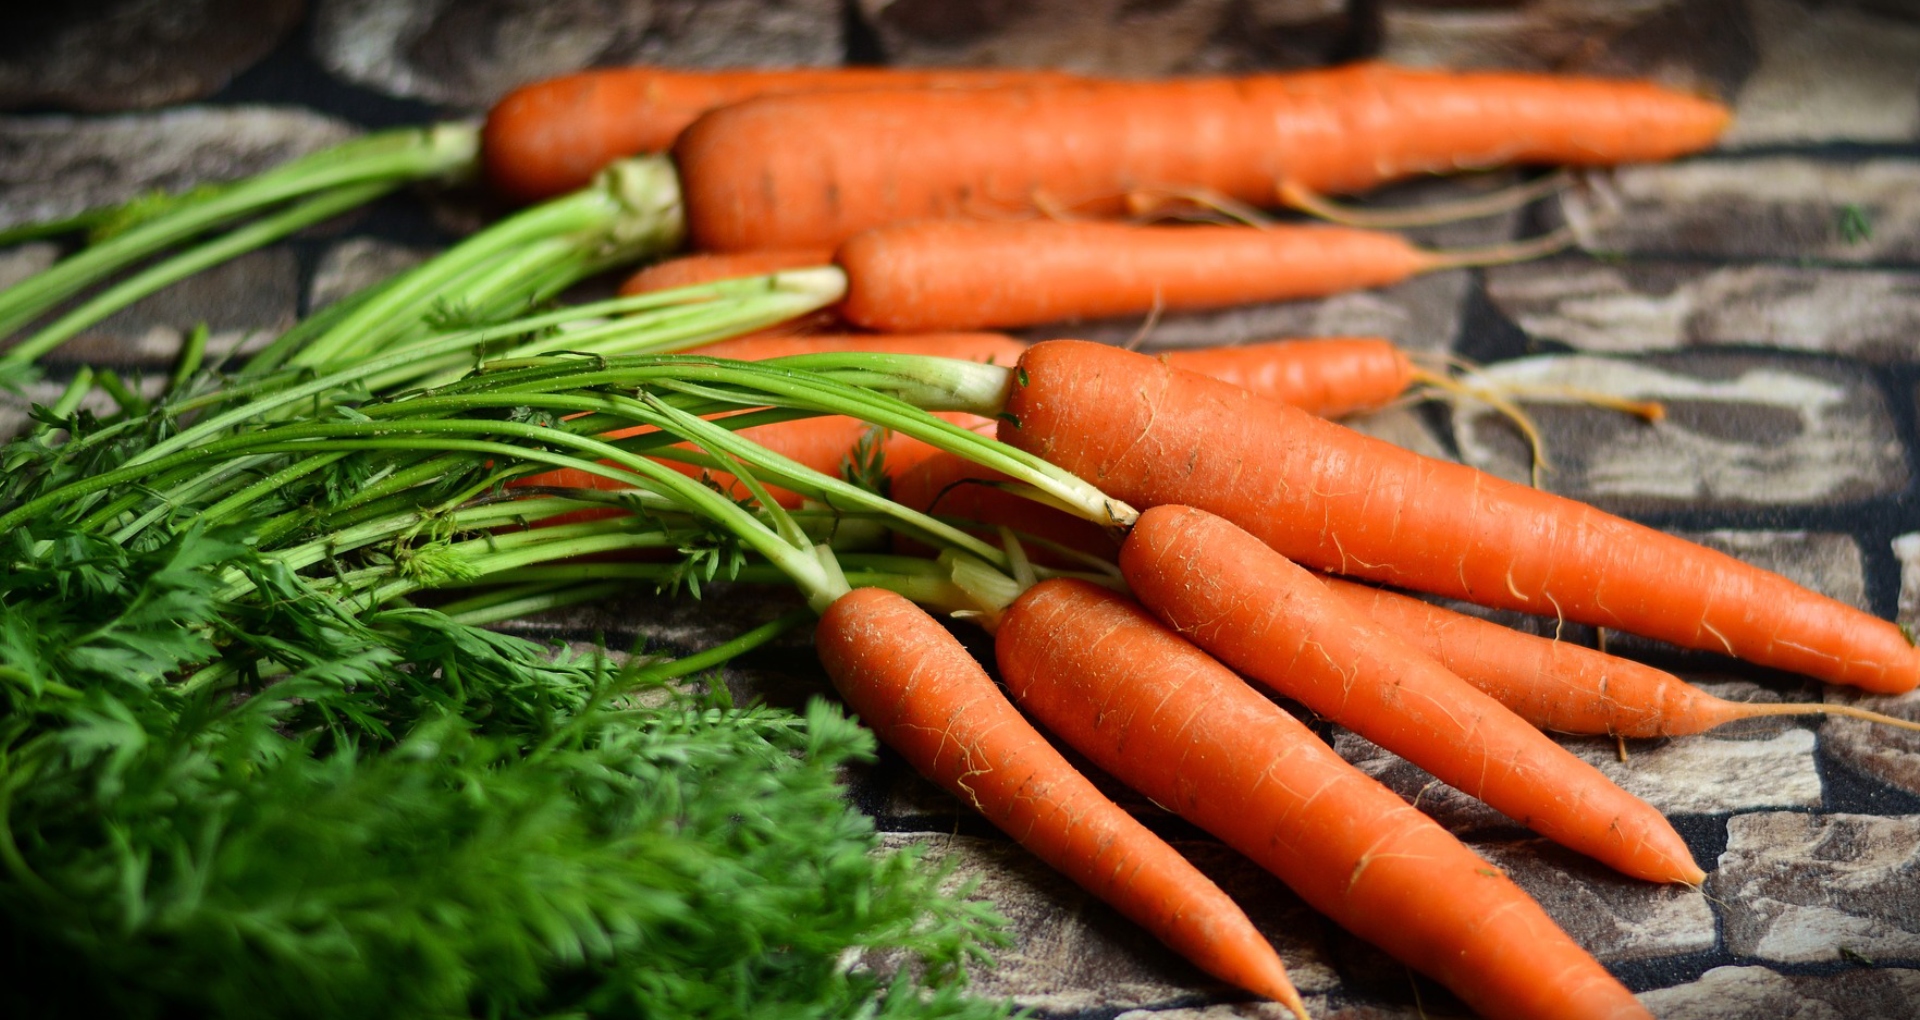 सेहत, स्वास्थ्य, गाजर का जूस, गाजर के फायदे, health, health, carrot juice, benefits of carrots,